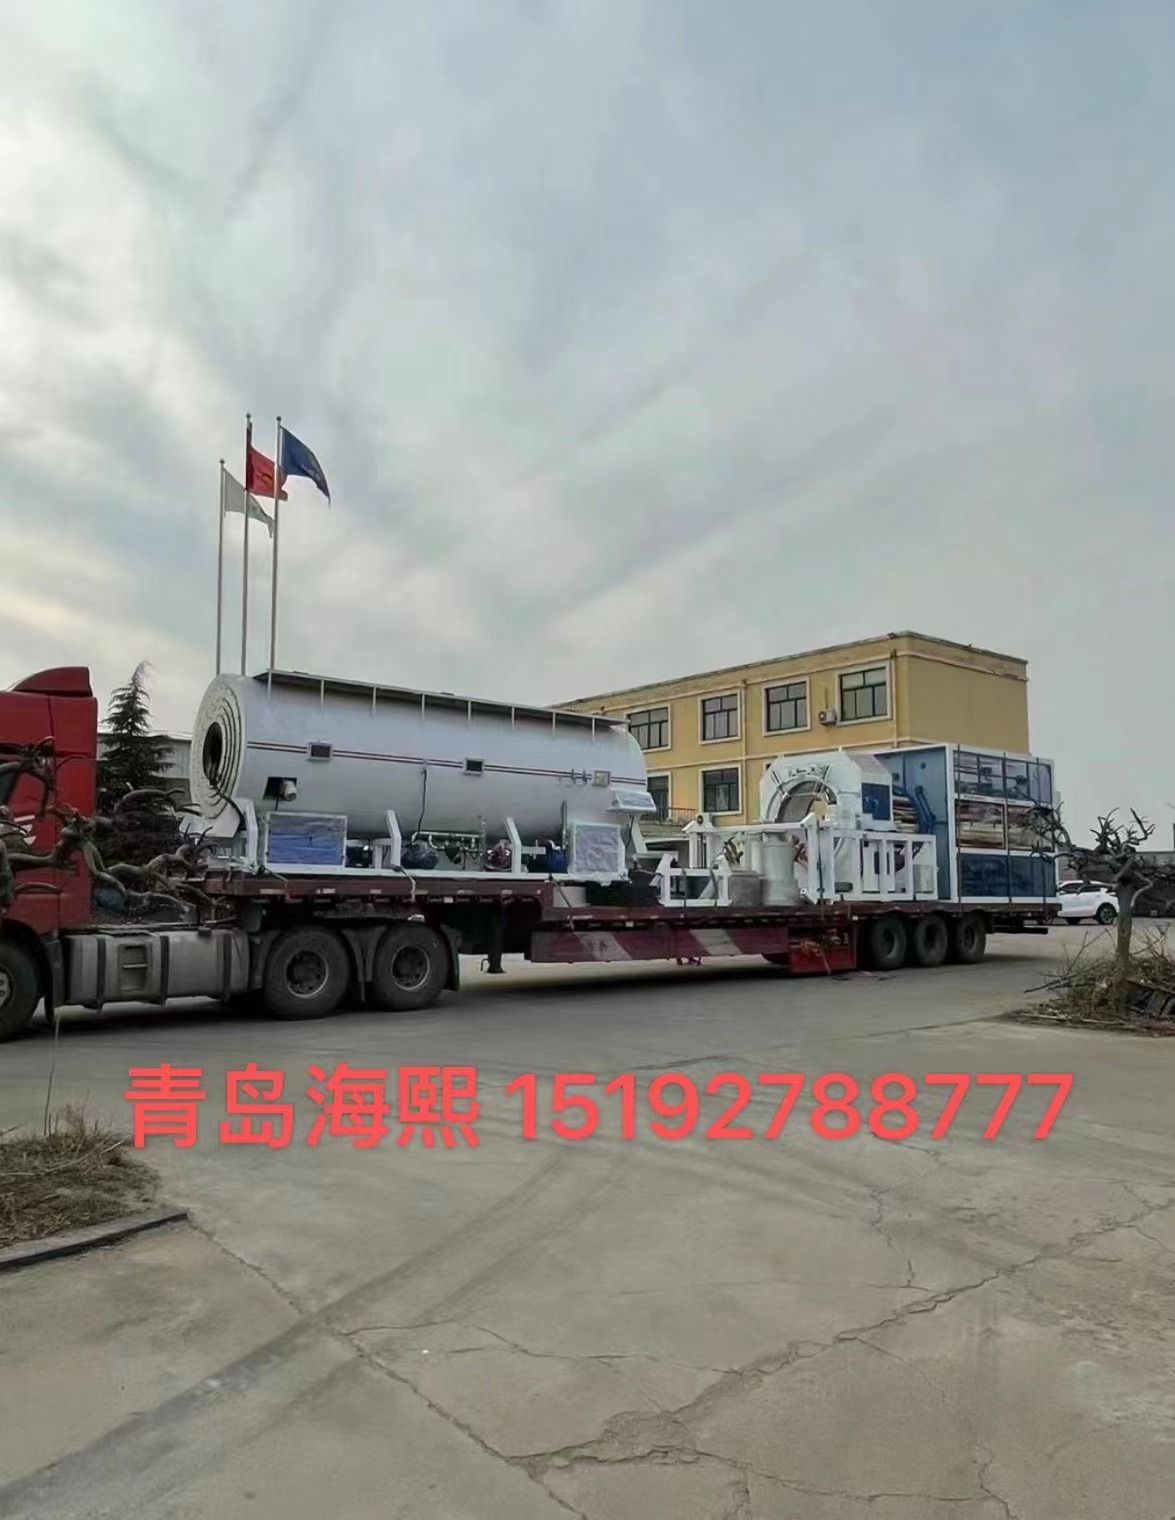 海熙機械-----河北晟澤管道制造集團有限公司